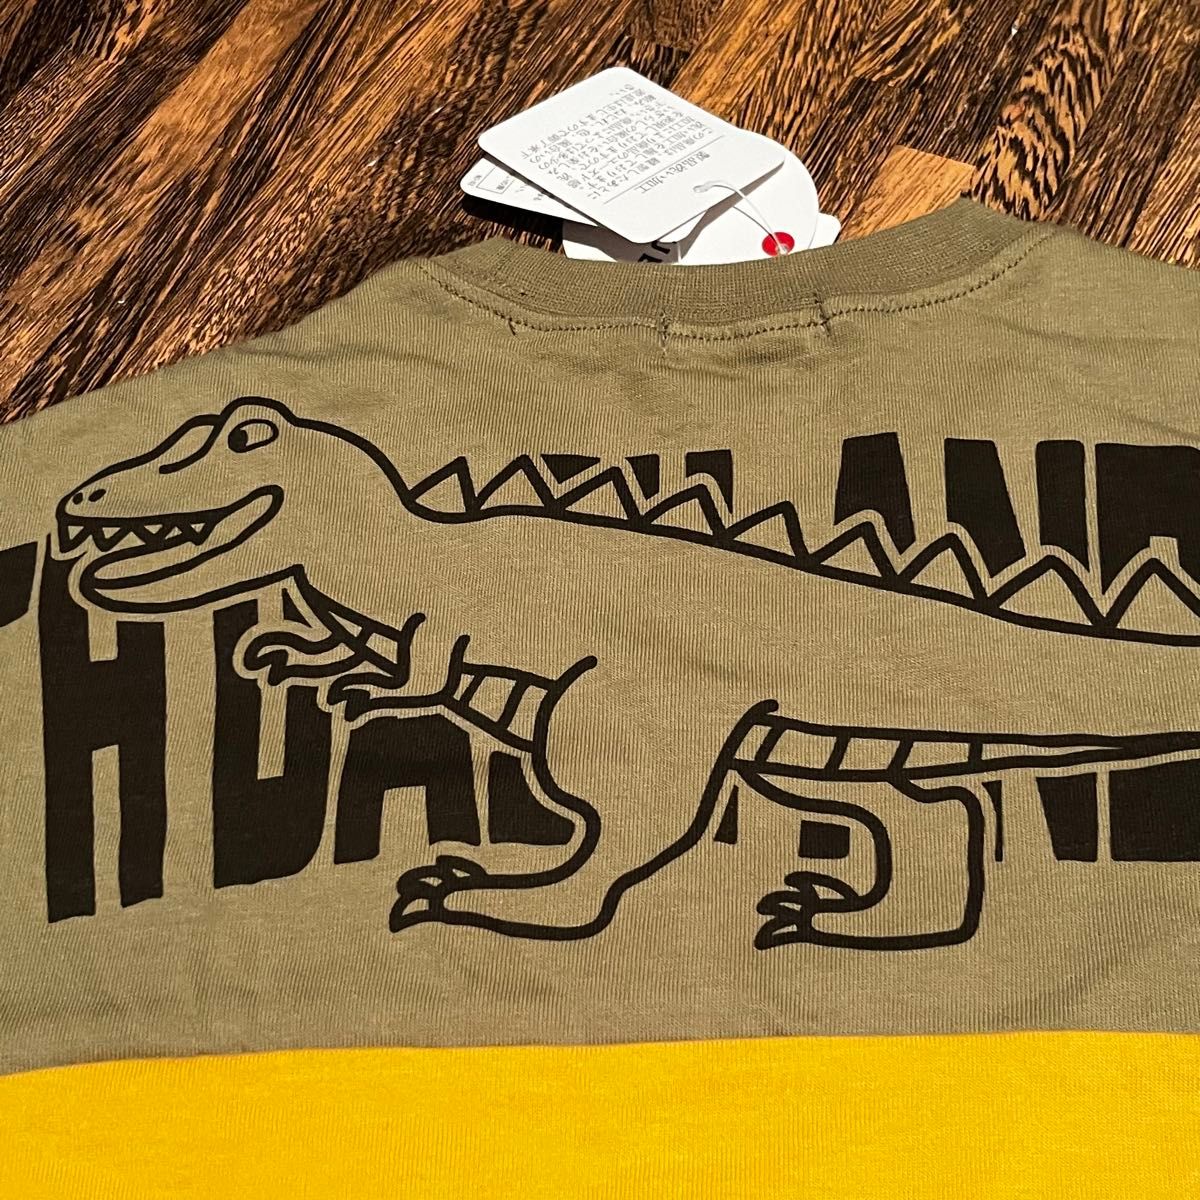 baiya110男の子ボーイズTシャツ半袖恐竜ザラ新品未使用動物アニマル白黄色 カットソー トップス 春夏